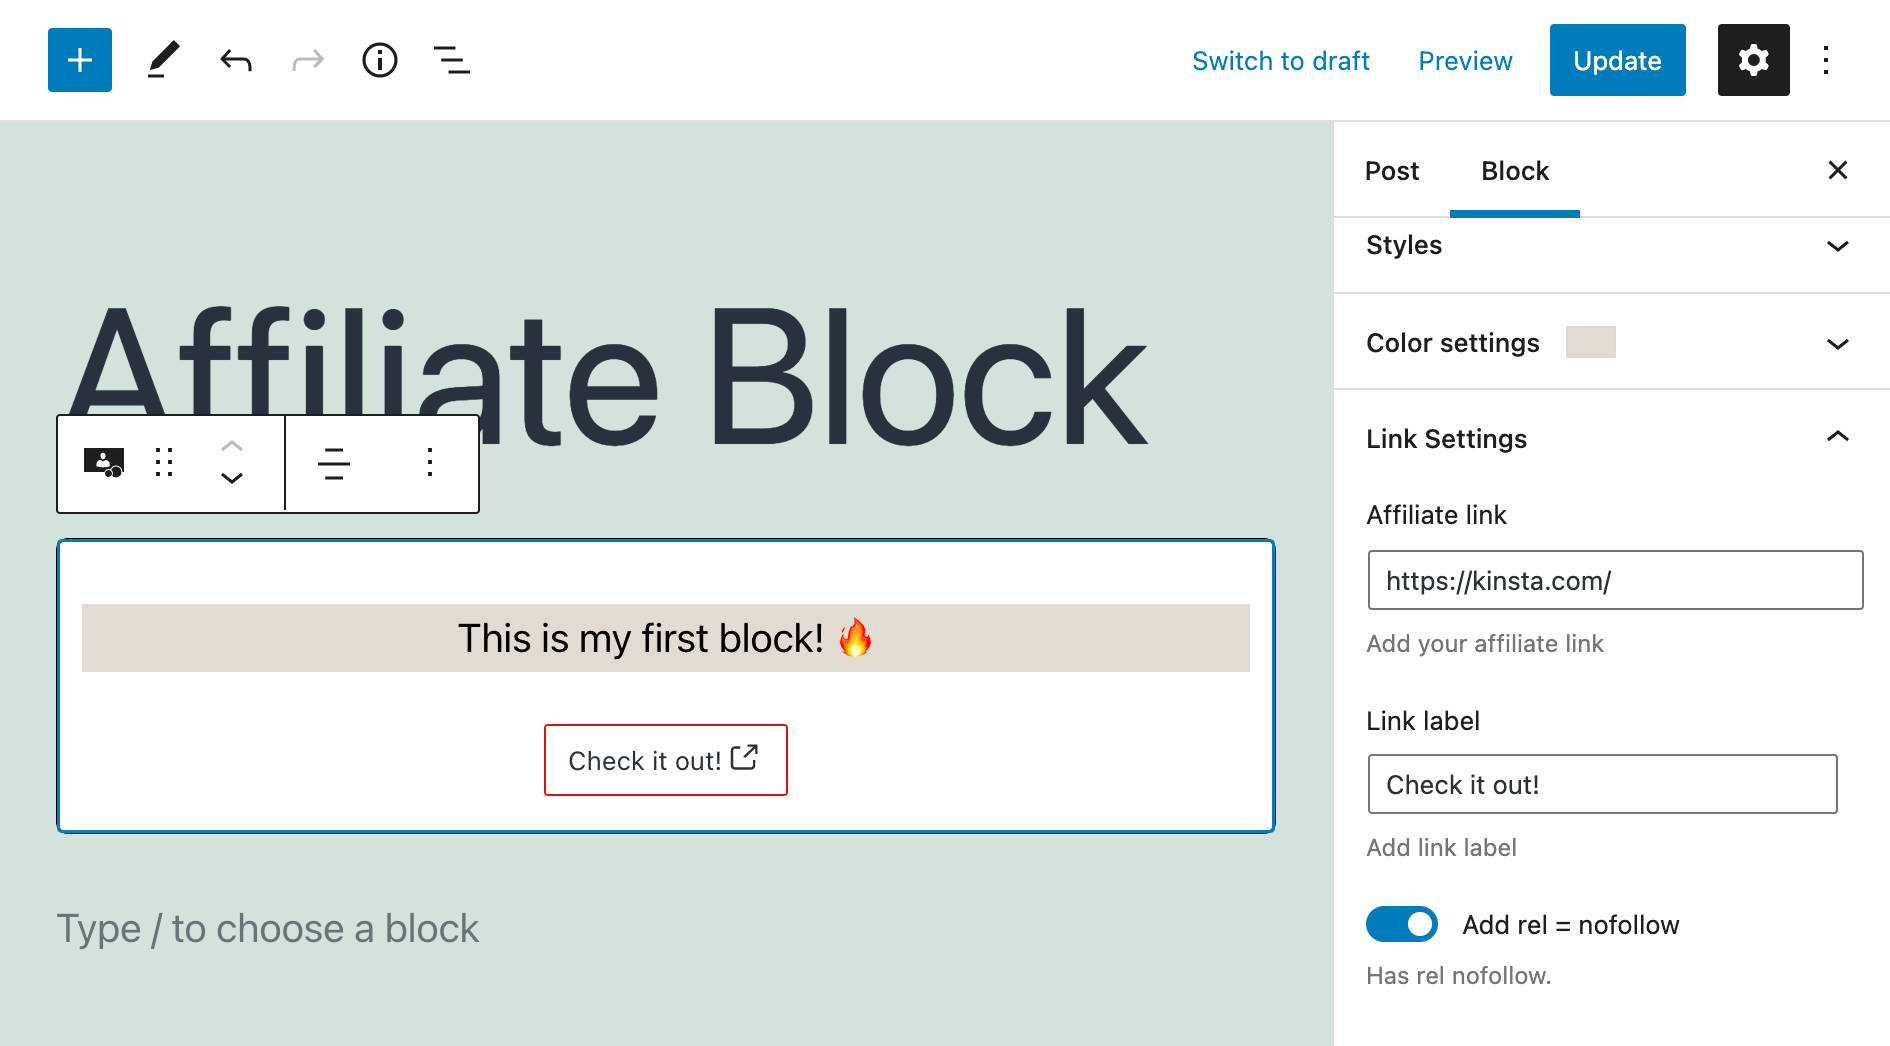 Affiliate block link settings.